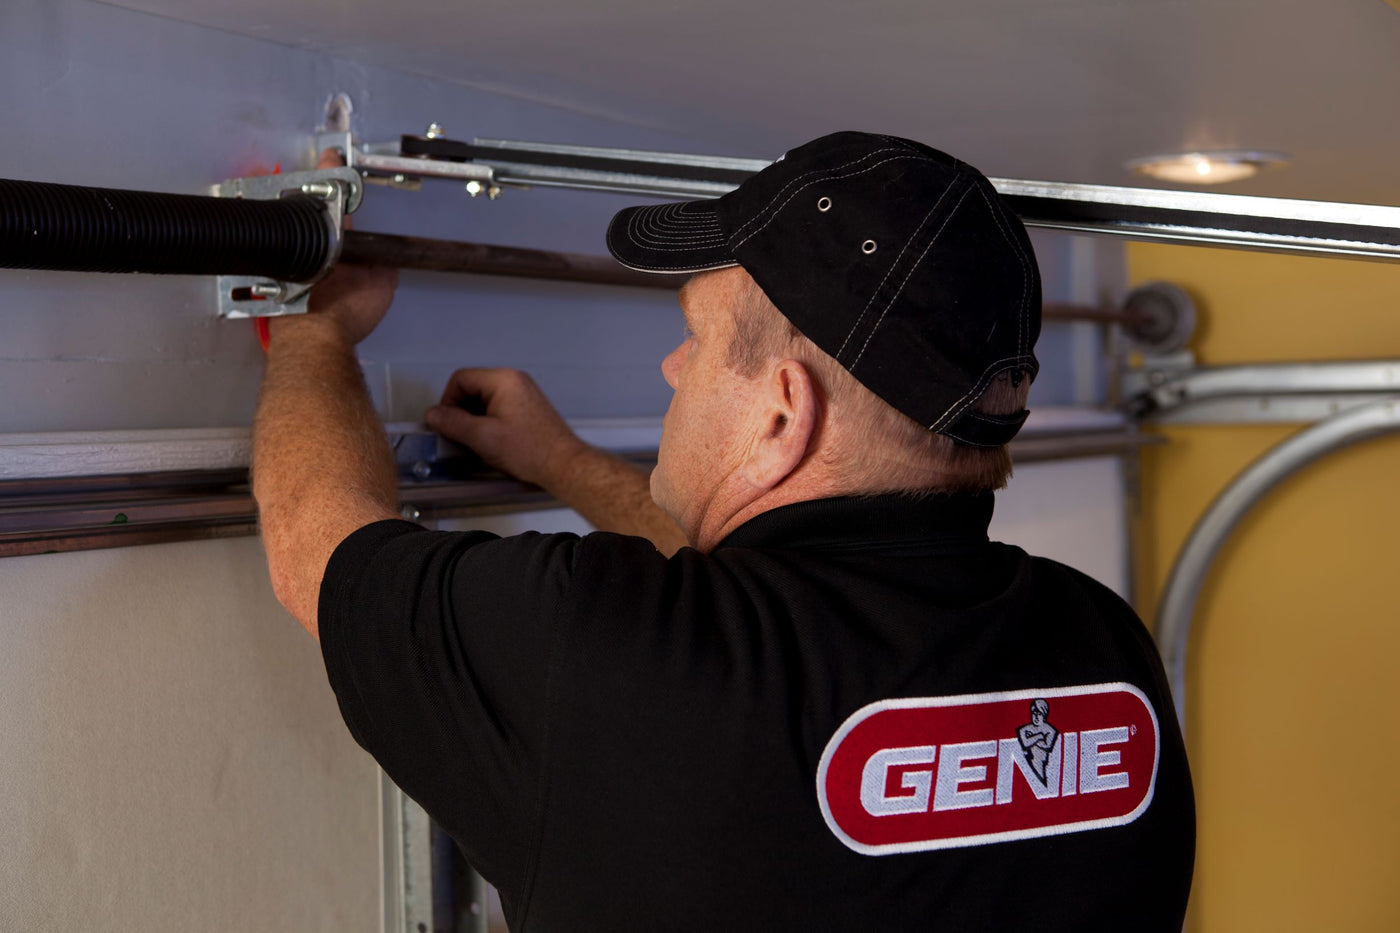 Genie Garage Door Opener Installation Service The Genie Company [ 933 x 1400 Pixel ]